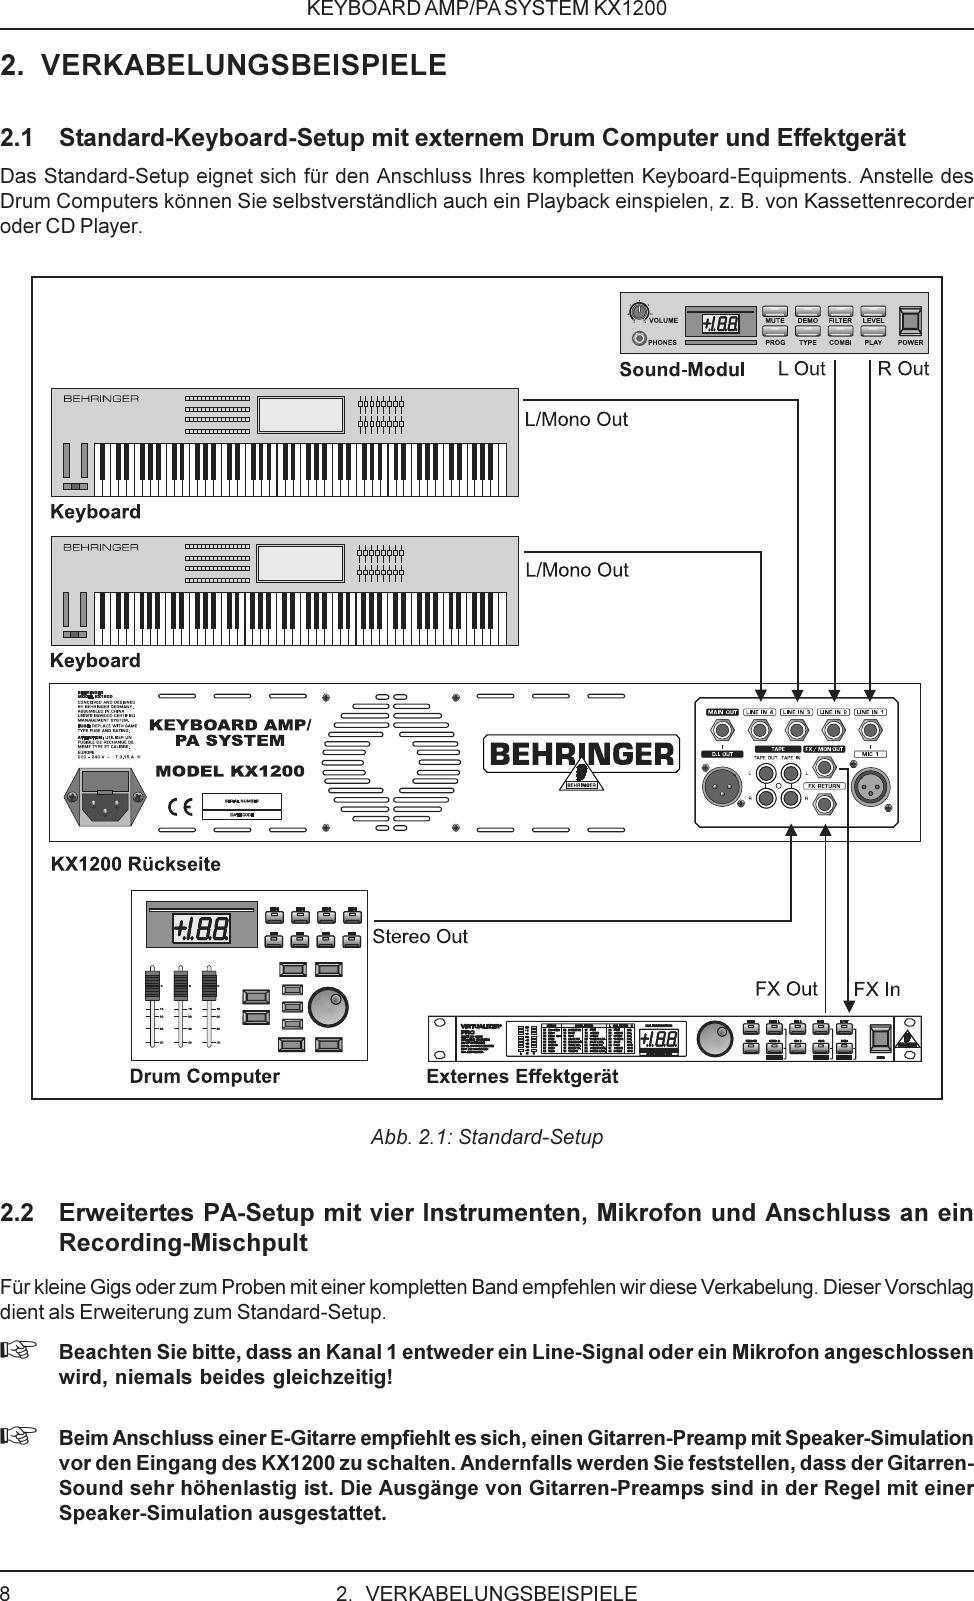 DATA MANFULL_KX1200_GER_Rev. B.p65 Behringer KX1200 User Manual ...